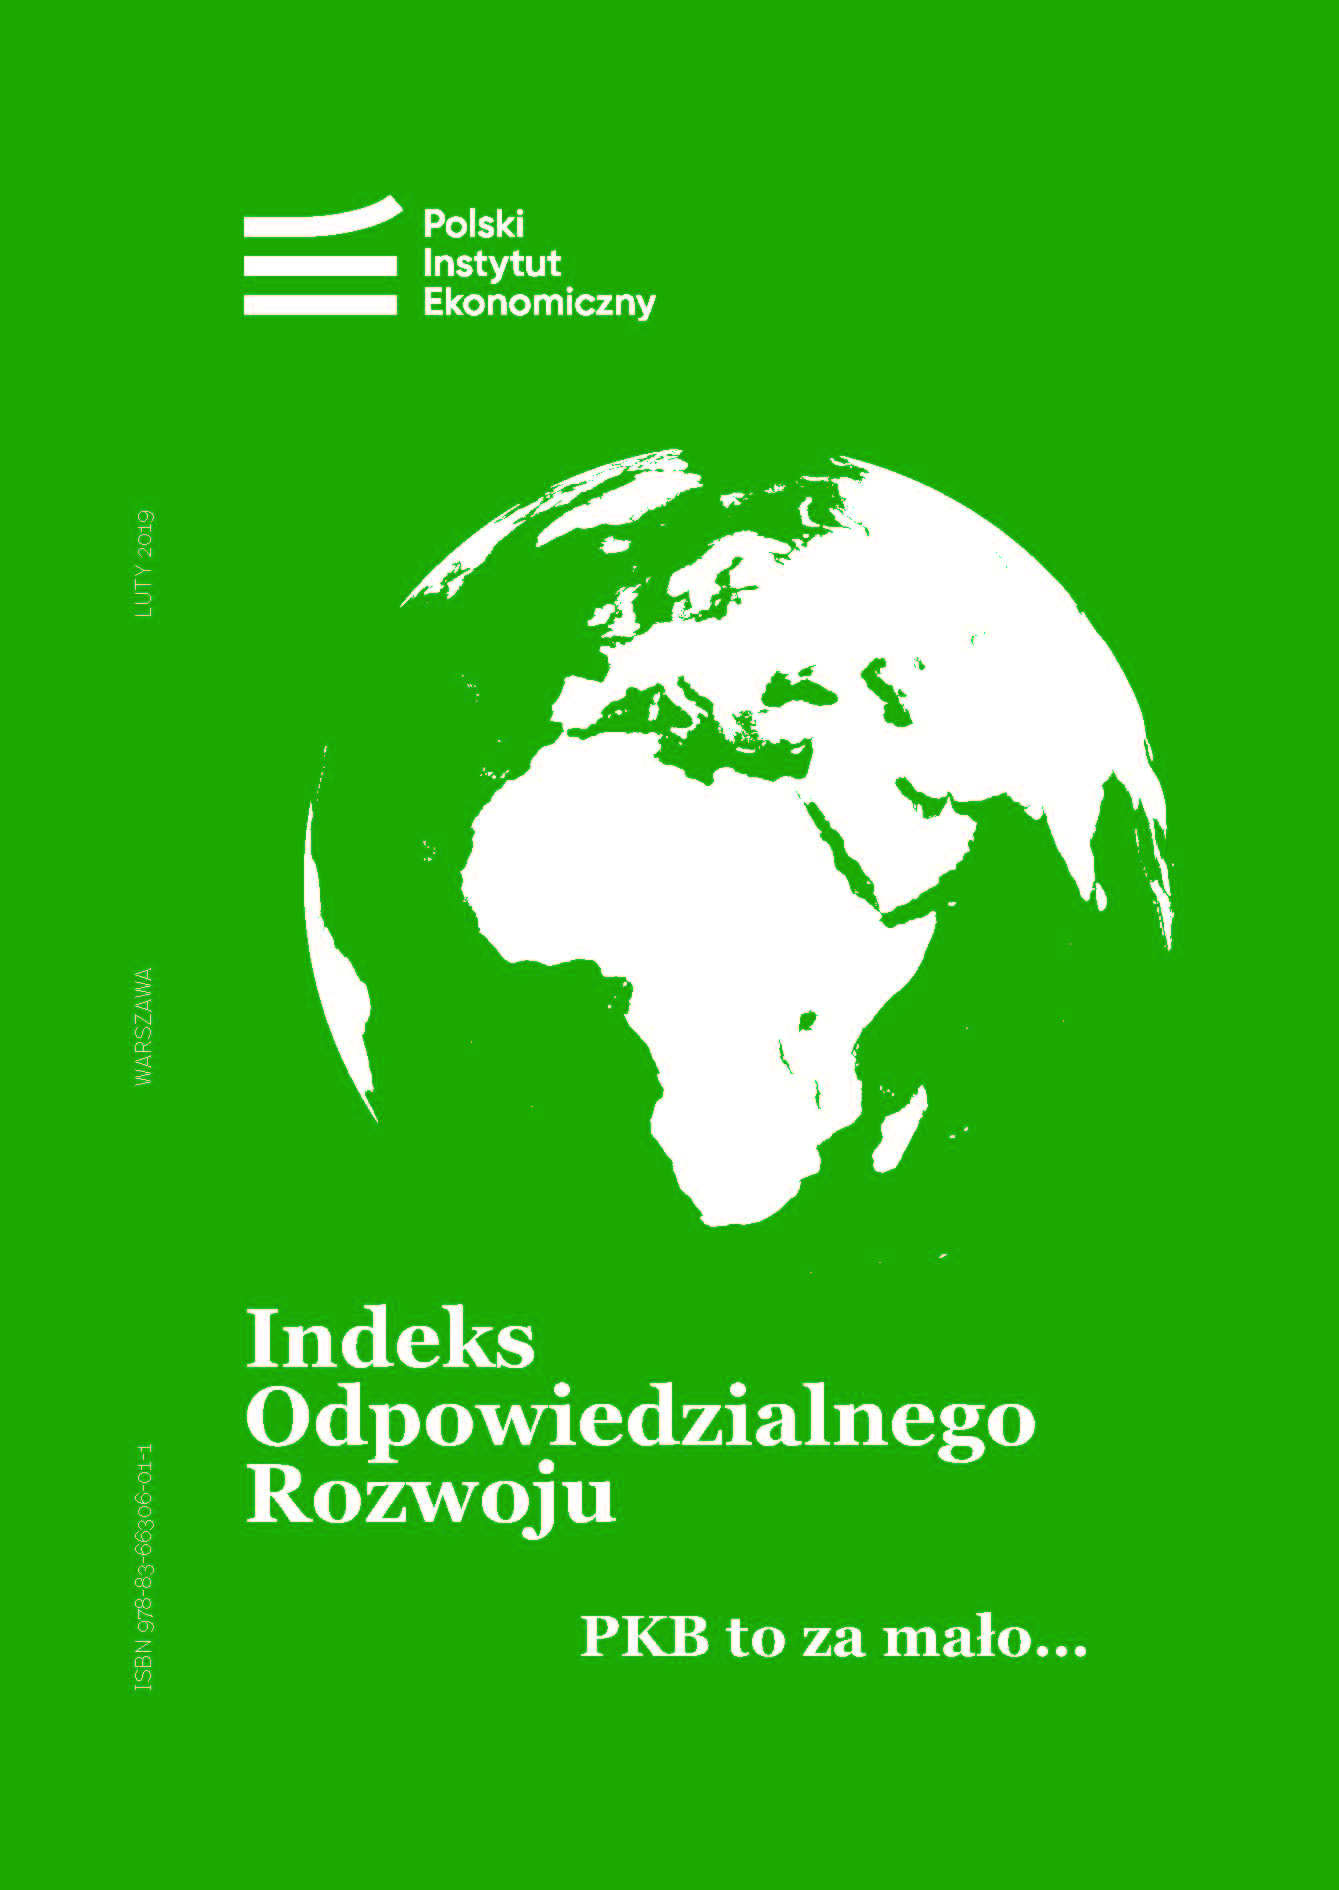 Indeks Odpowiedzialnego Rozwoju: Polska na 29. miejscu na świecie dzięki długości życia i niskim nierównościom